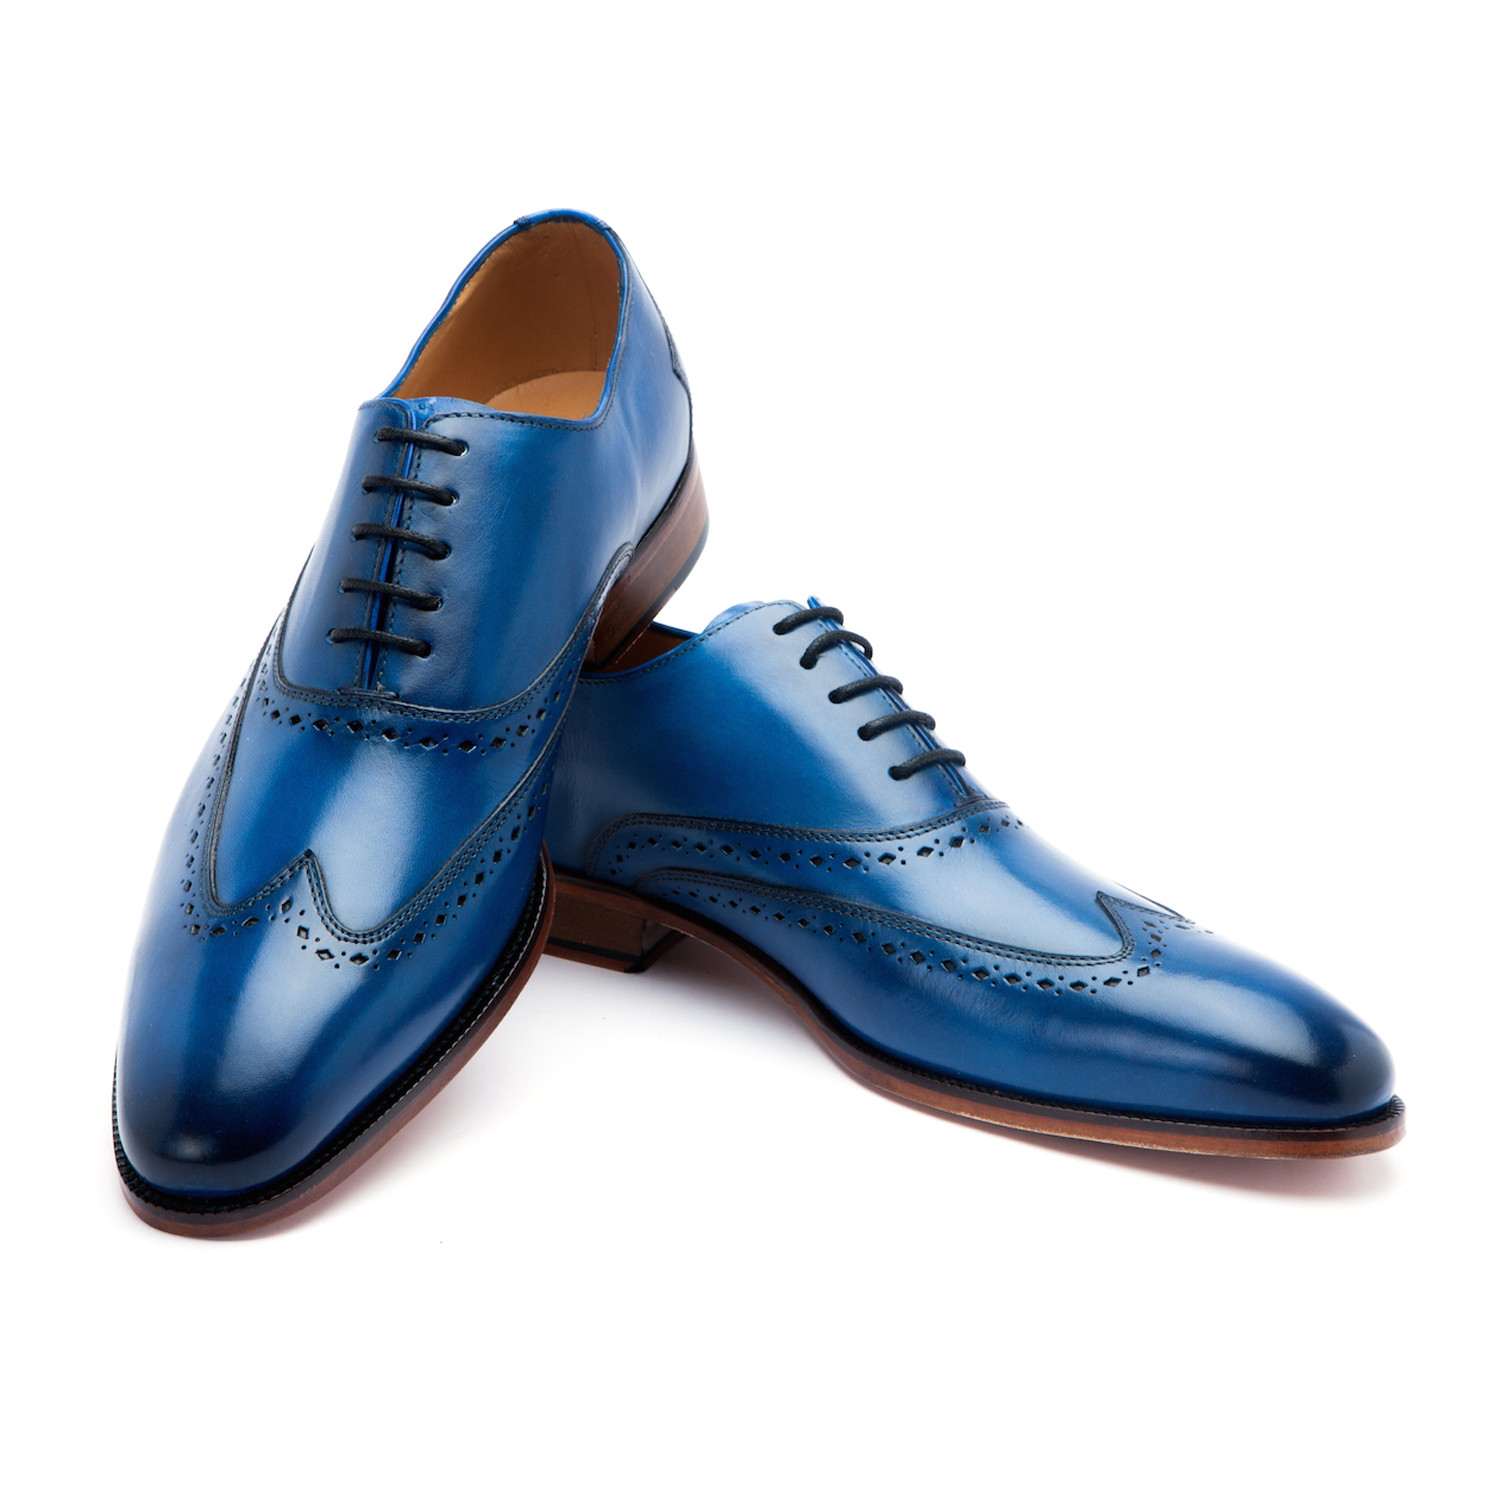 Синяя мужская обувь. Wingtip Oxford Shoes. Туфли Oksford Shoes мужские. 1203-2-A263 синие туфли мужские gio Cellini Milano. Loiter обувь мужская туфли синие.